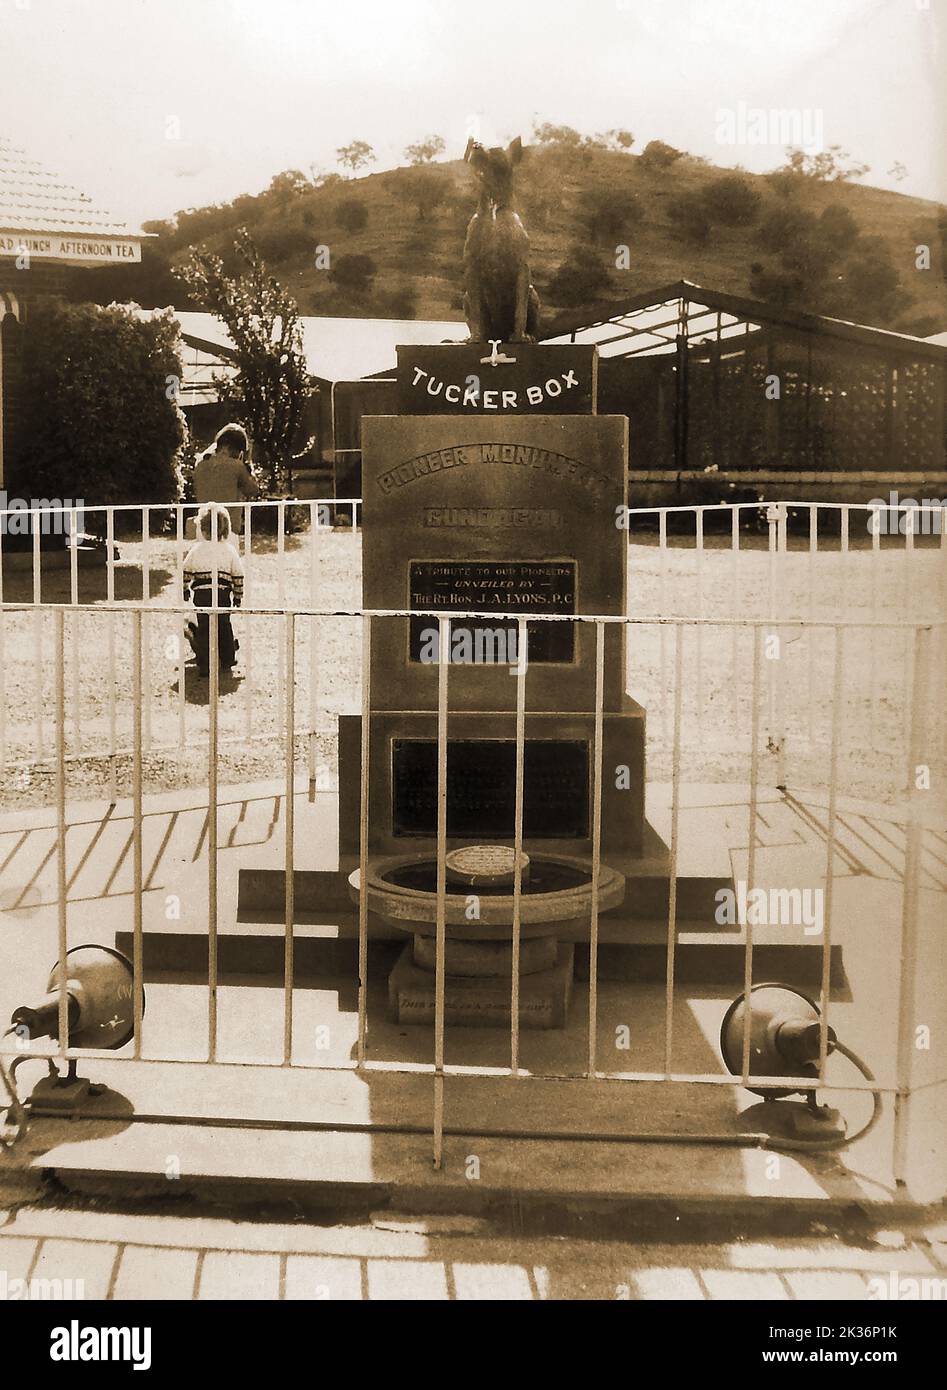 Le chien sur la statue de boîte de tucker près de Gundagai, (sculpteur Frank Rusconi) comme il était en 1971. Le chien sur la boîte de Tucker a été décrit comme le mémorial des pionniers les plus connus d'Australie et se dresse à 9 (ou 5 selon certaines sources) kilomètres de Gundagai, en Australie. Plus de 3000 personnes ont assisté à la cérémonie officielle de dévoilement du Premier ministre Joseph Lyons en 1932. Banque D'Images